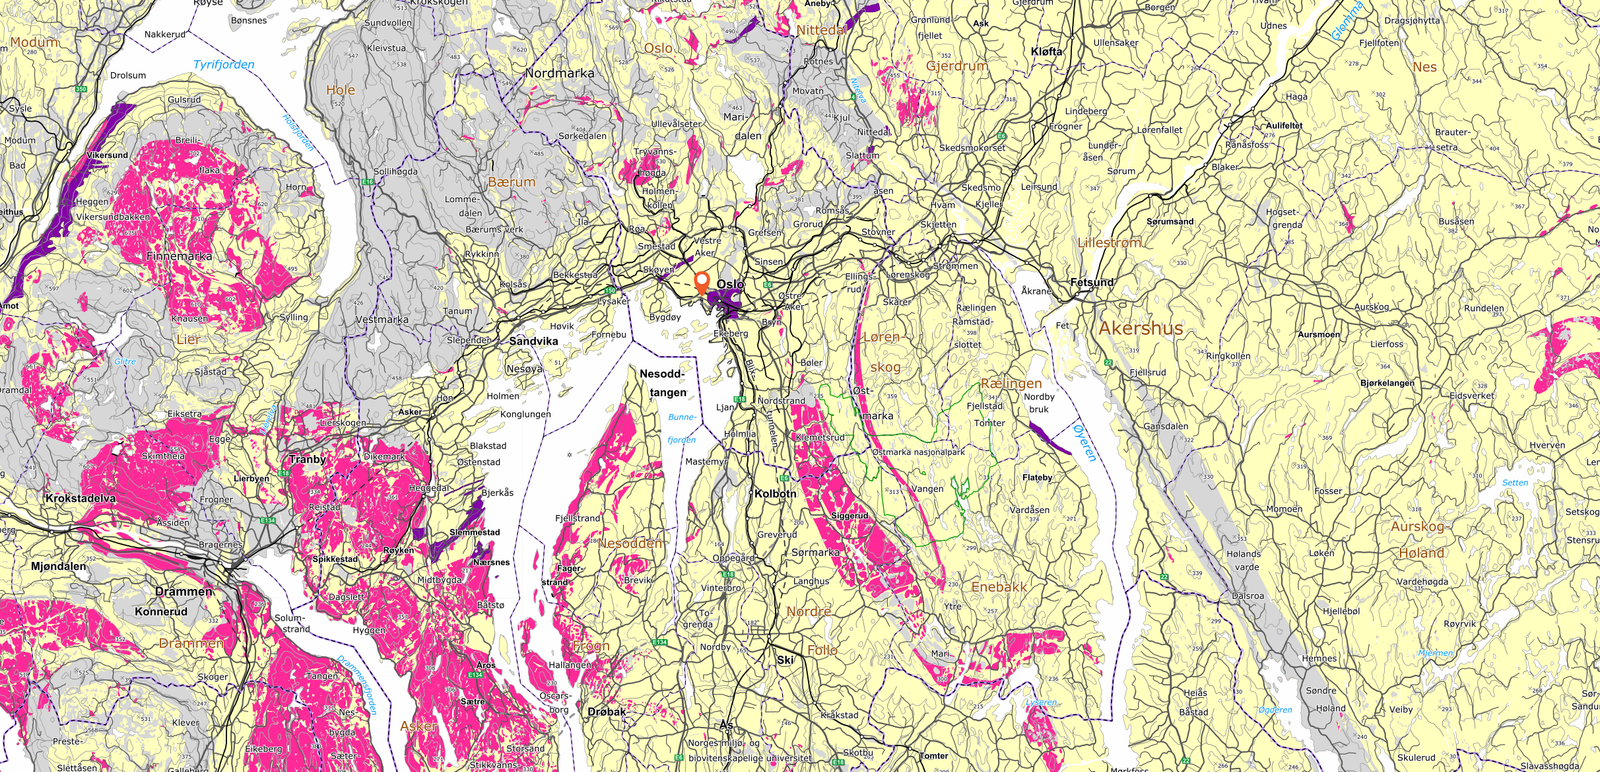 Radonkart over Osloområdet - Radoninspektøren